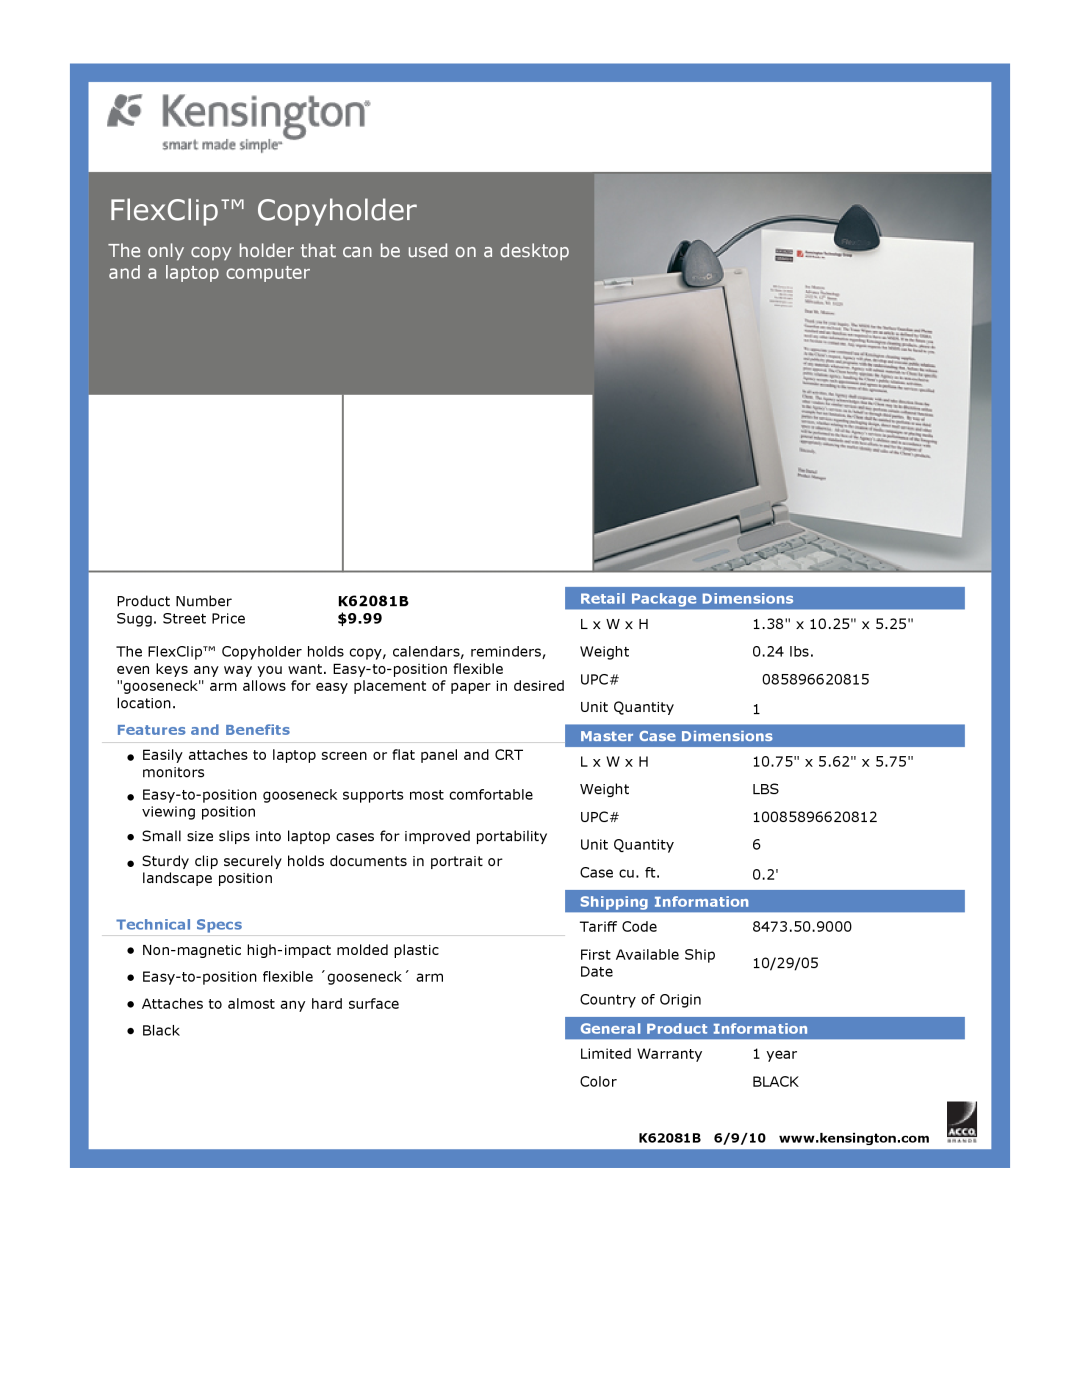 Kensington EU64325 dimensions FlexClip Copyholder, $9.99, Features and Benefits, Technical Specs, Retail Package Dimensions 